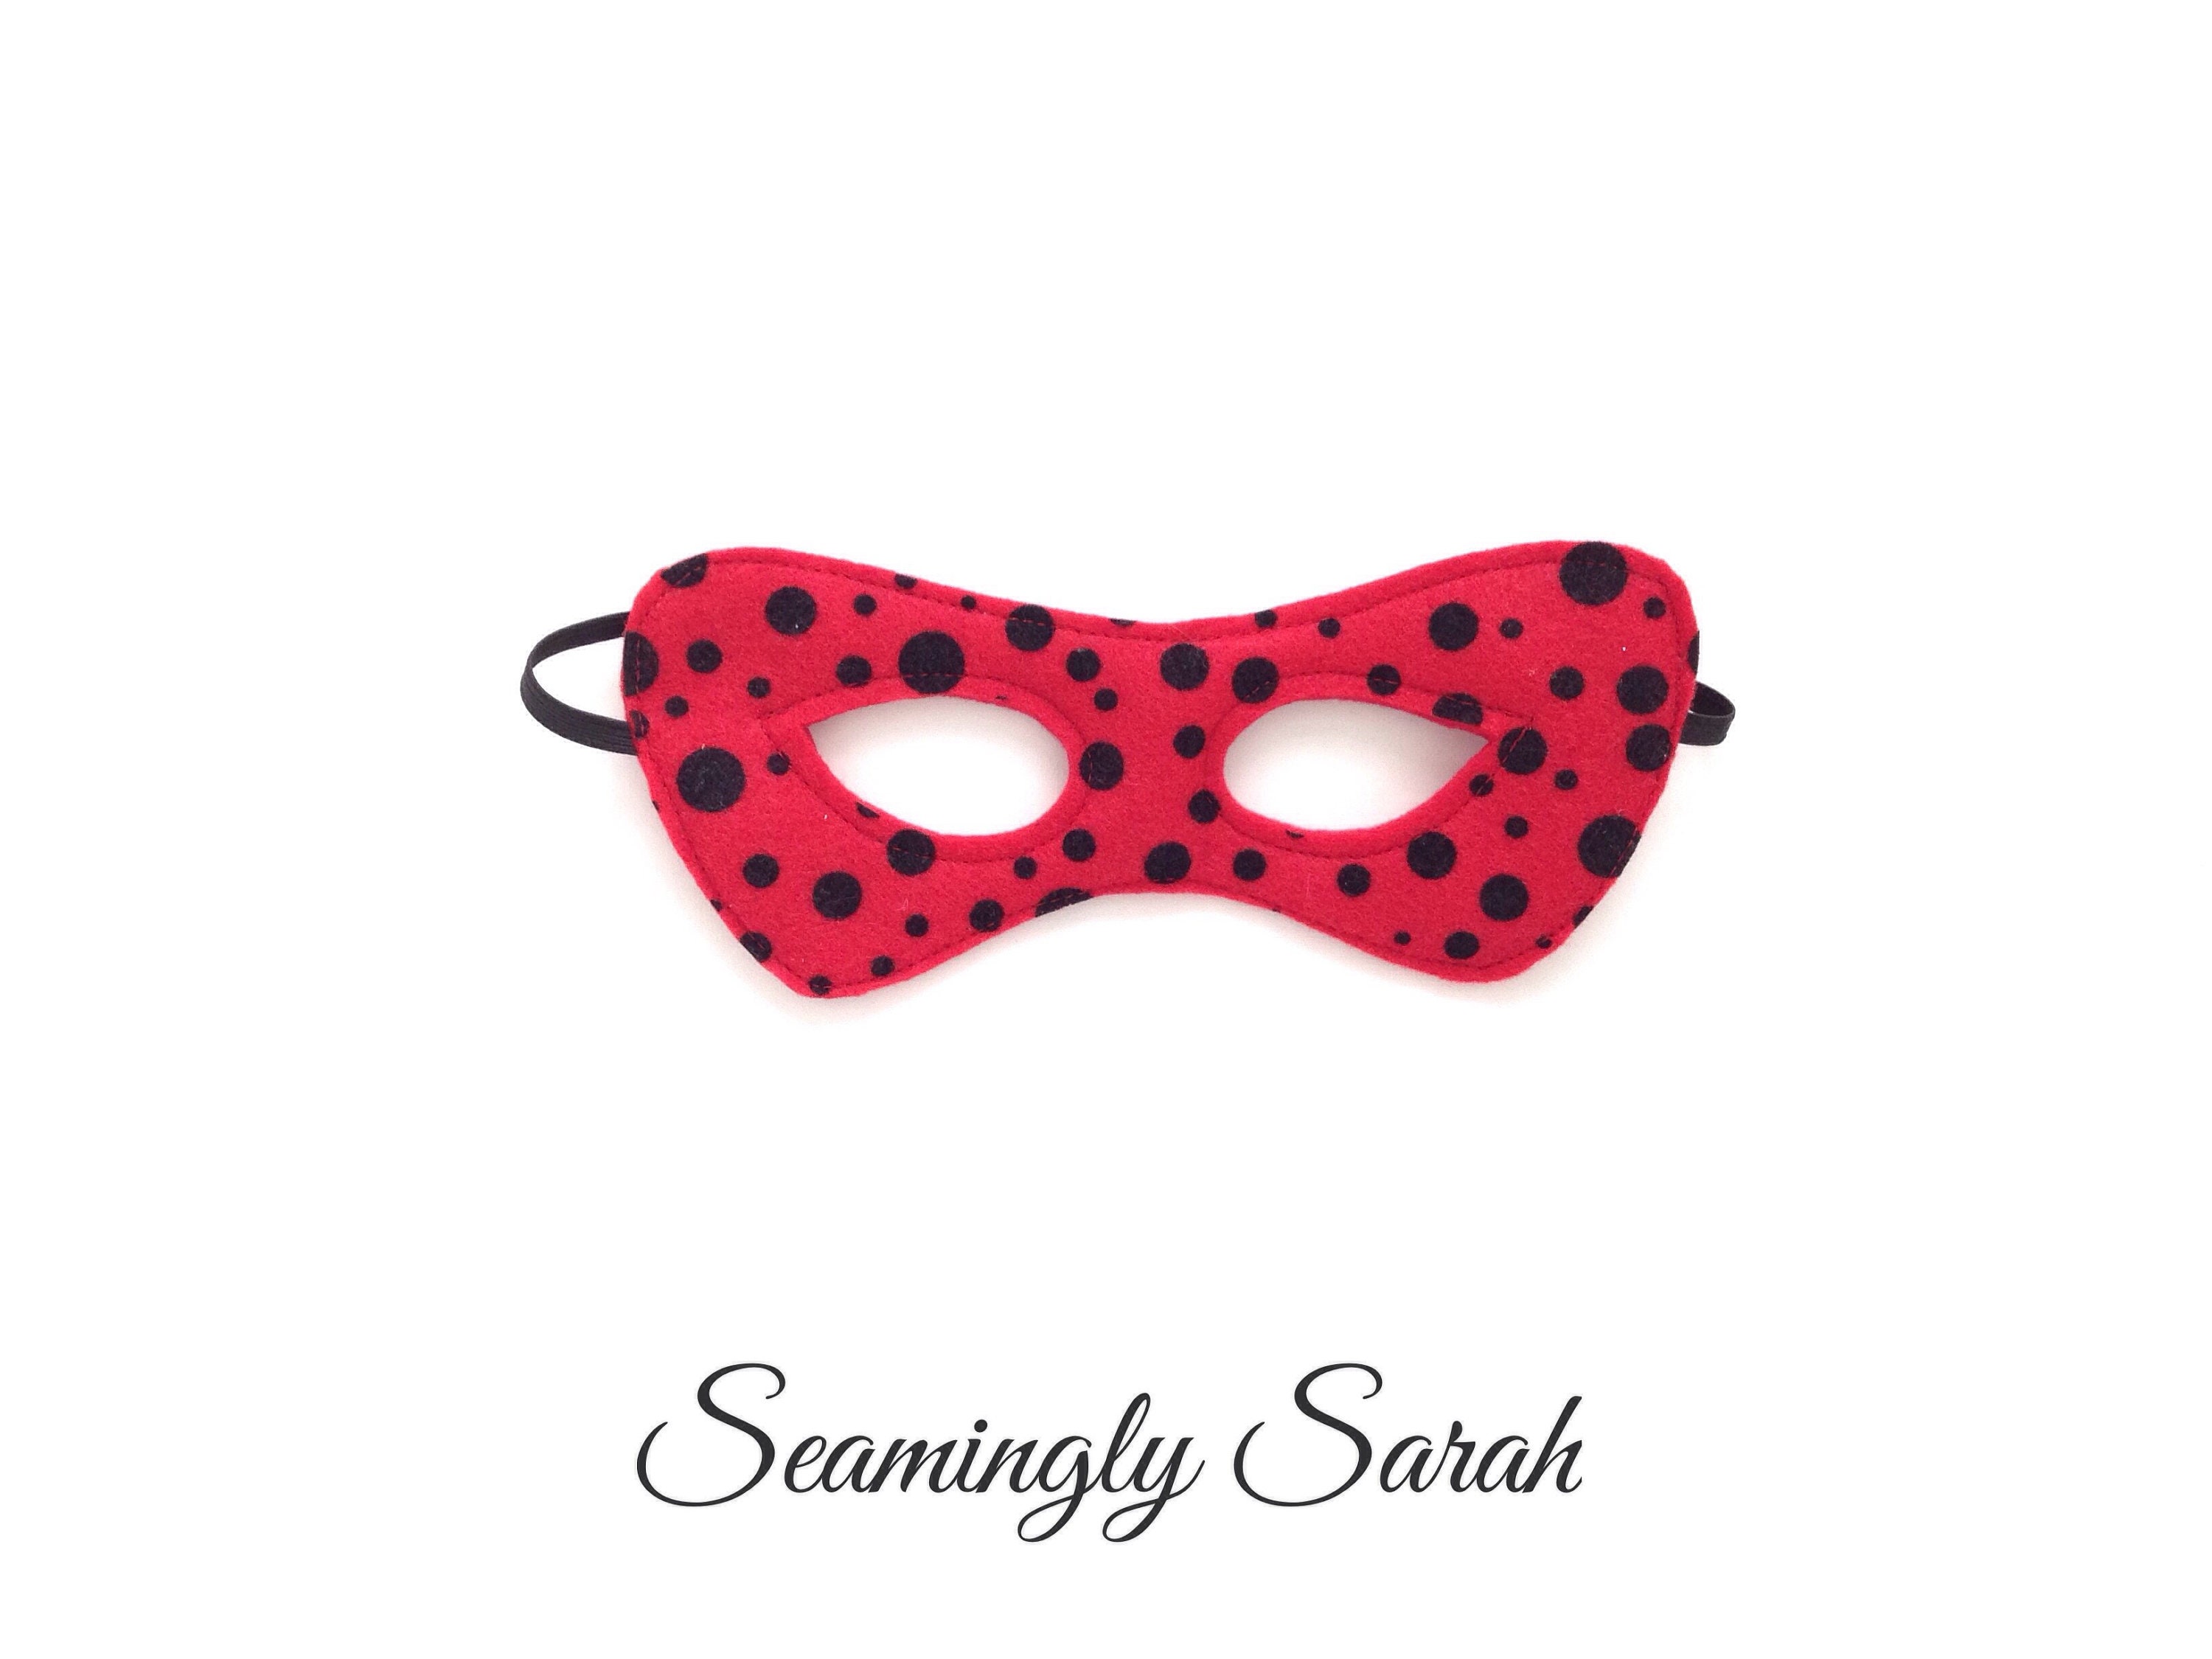 Balinco Masque de coccinelle rouge avec points noirs, Ladybug Mask, Coiffure, Masque de visage de coccinelle, Headwear